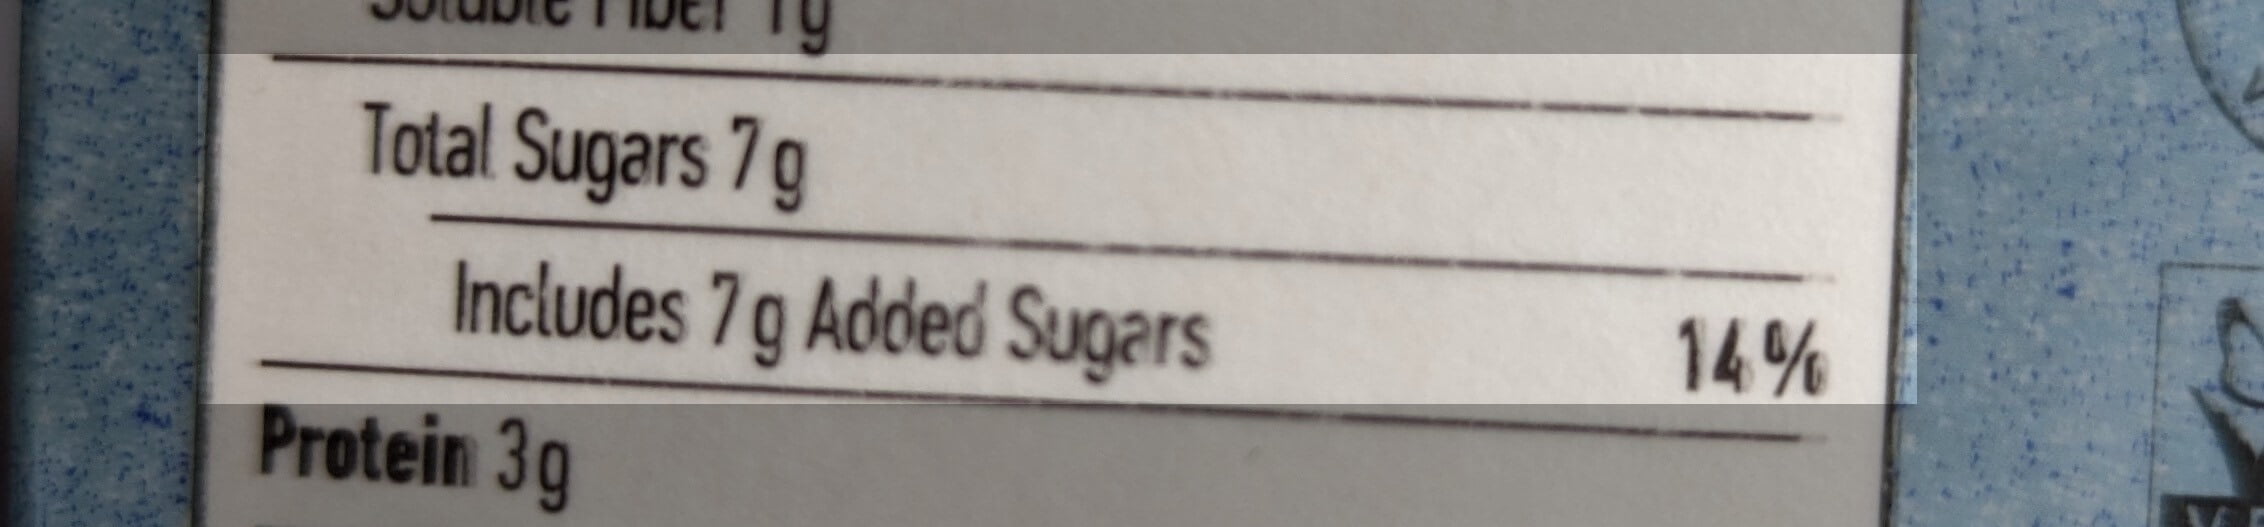 oatly includes 7g added sugar